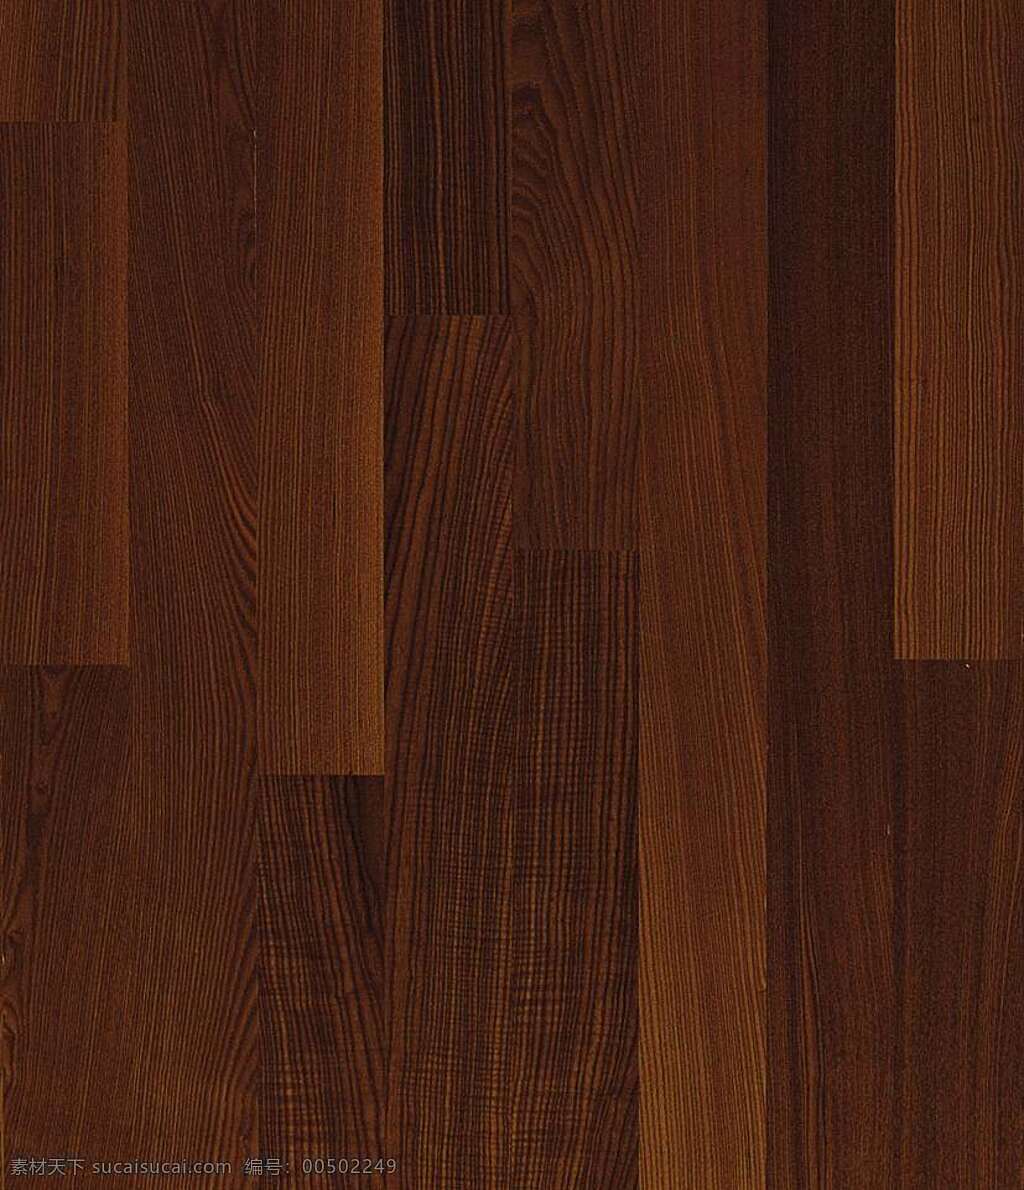 木地板 贴图 地板 设计素材 木地板贴图 木地板效果图 装修效果图 木地板材质 地板设计素材 装饰素材 室内装饰用图